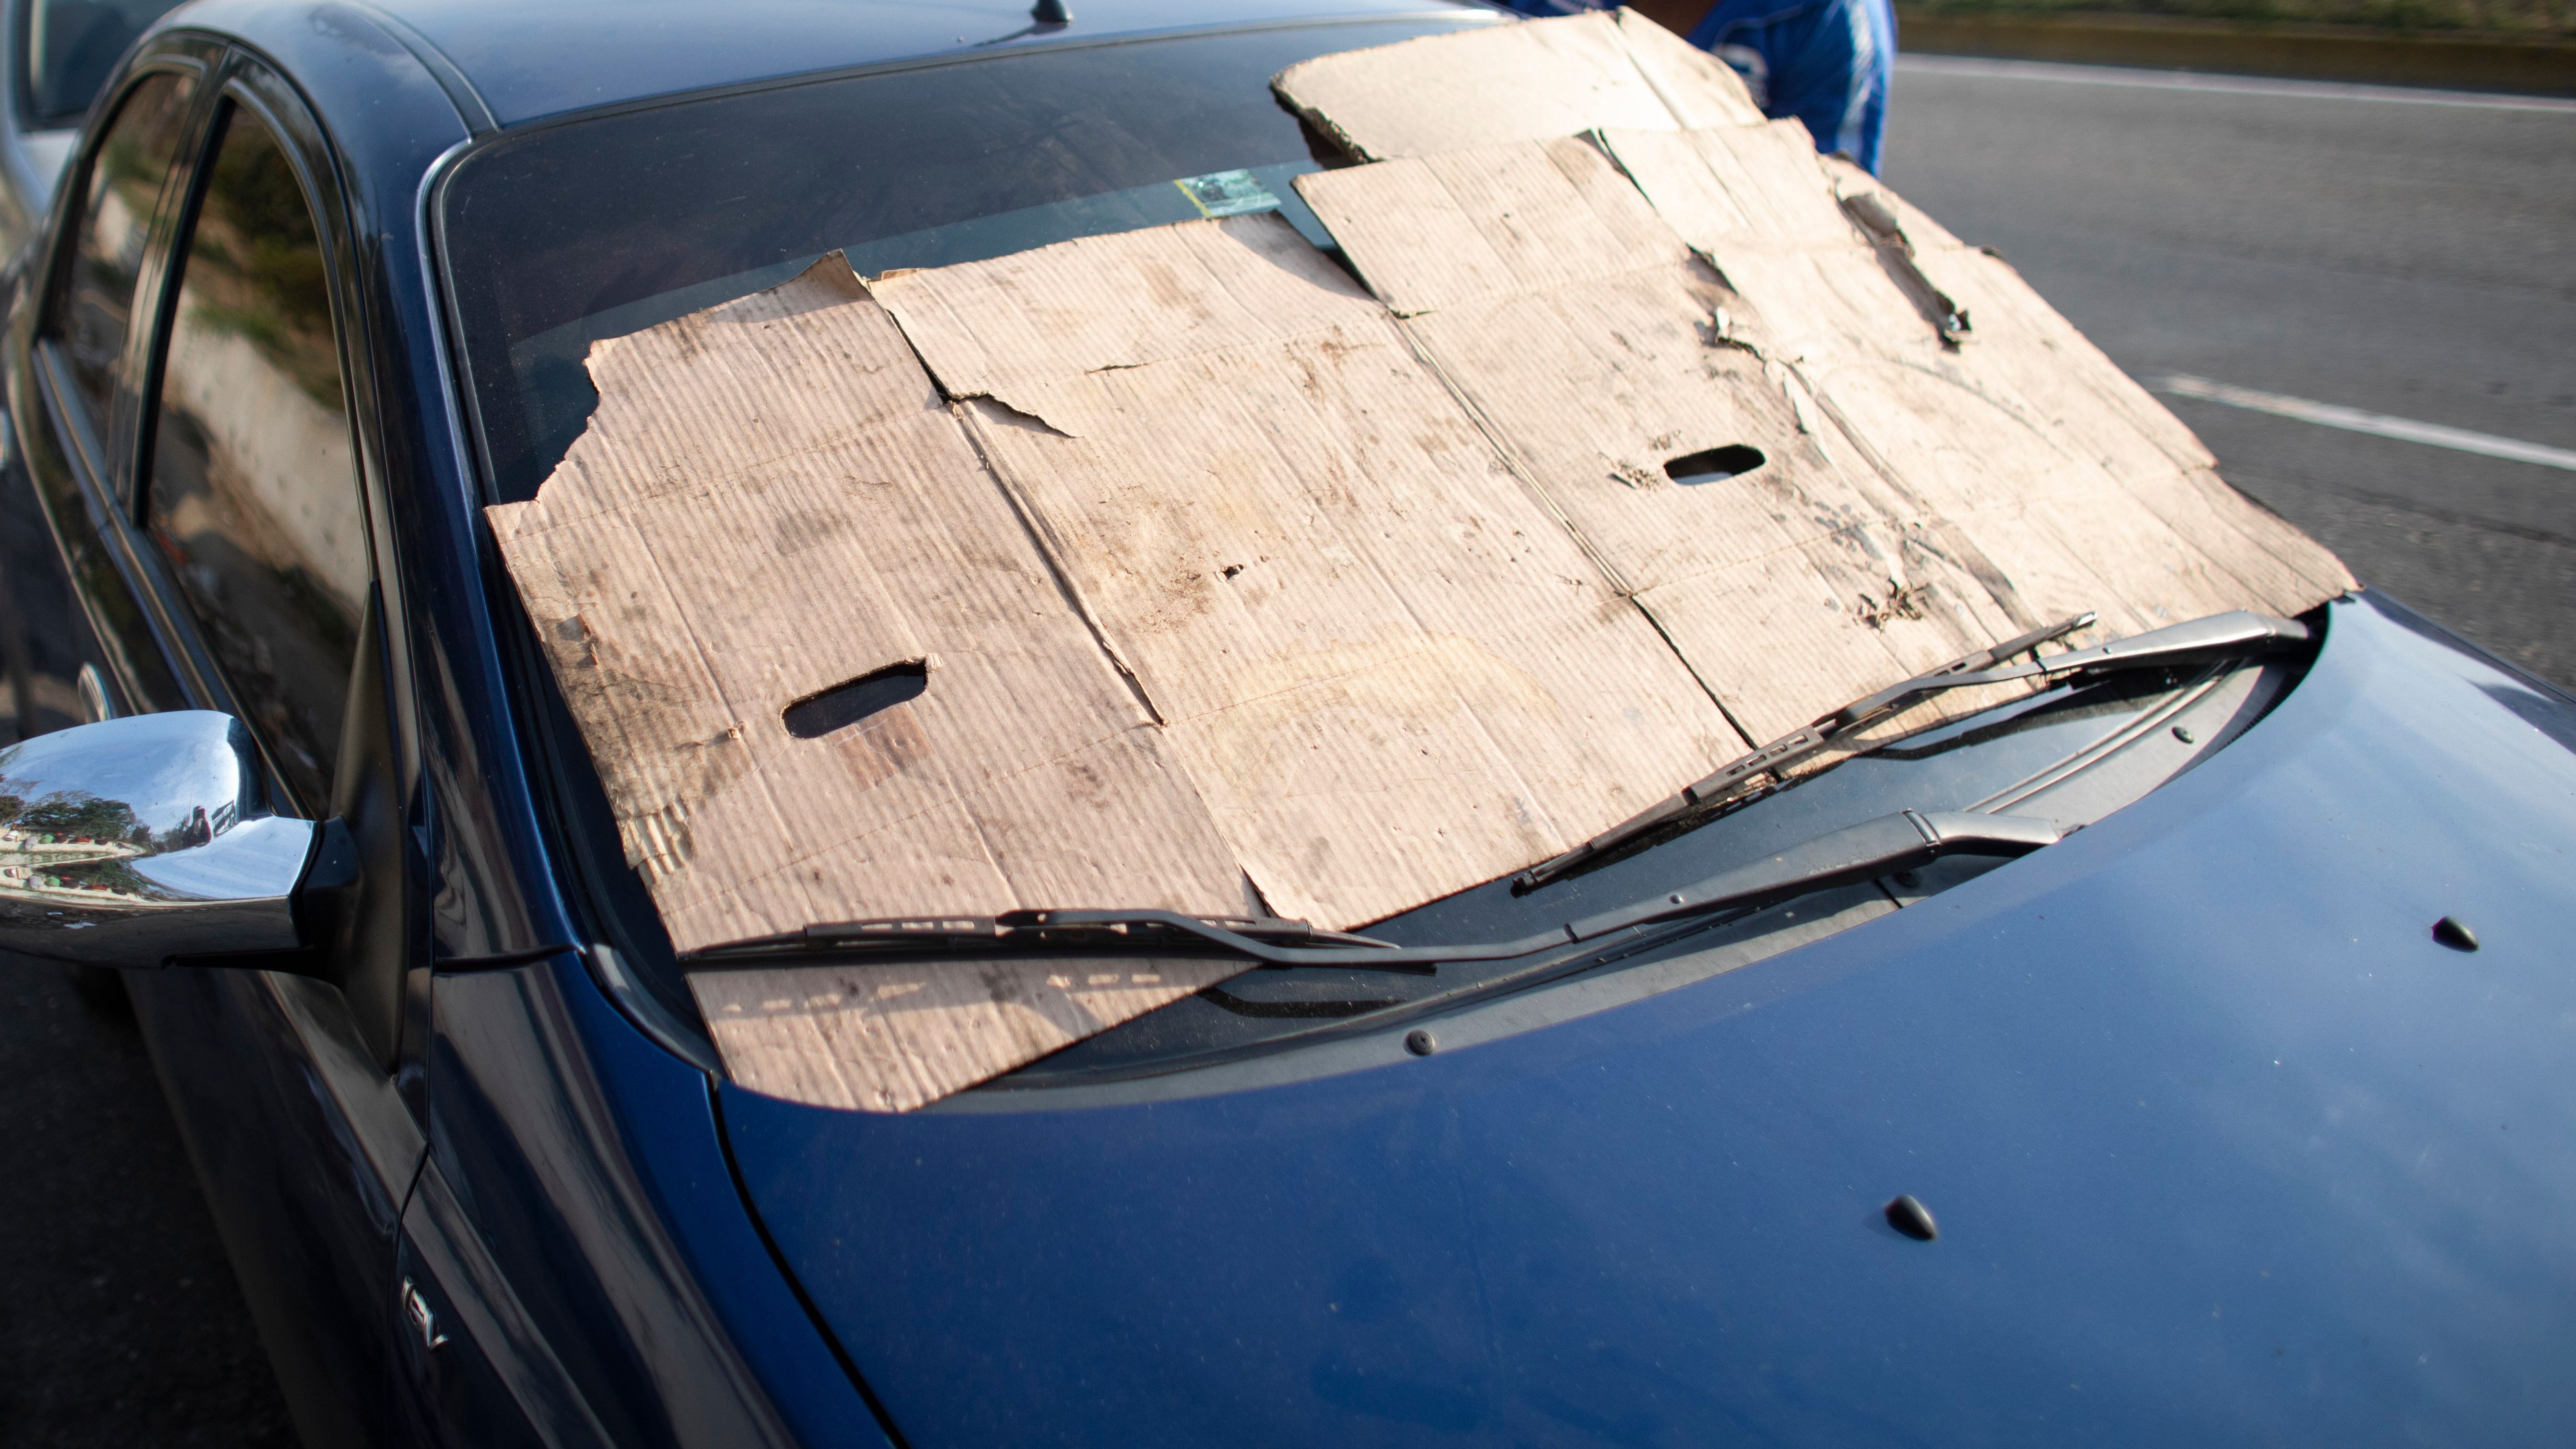 No utilices limpiaparabrisas caseros porque podrían dañar tu coche